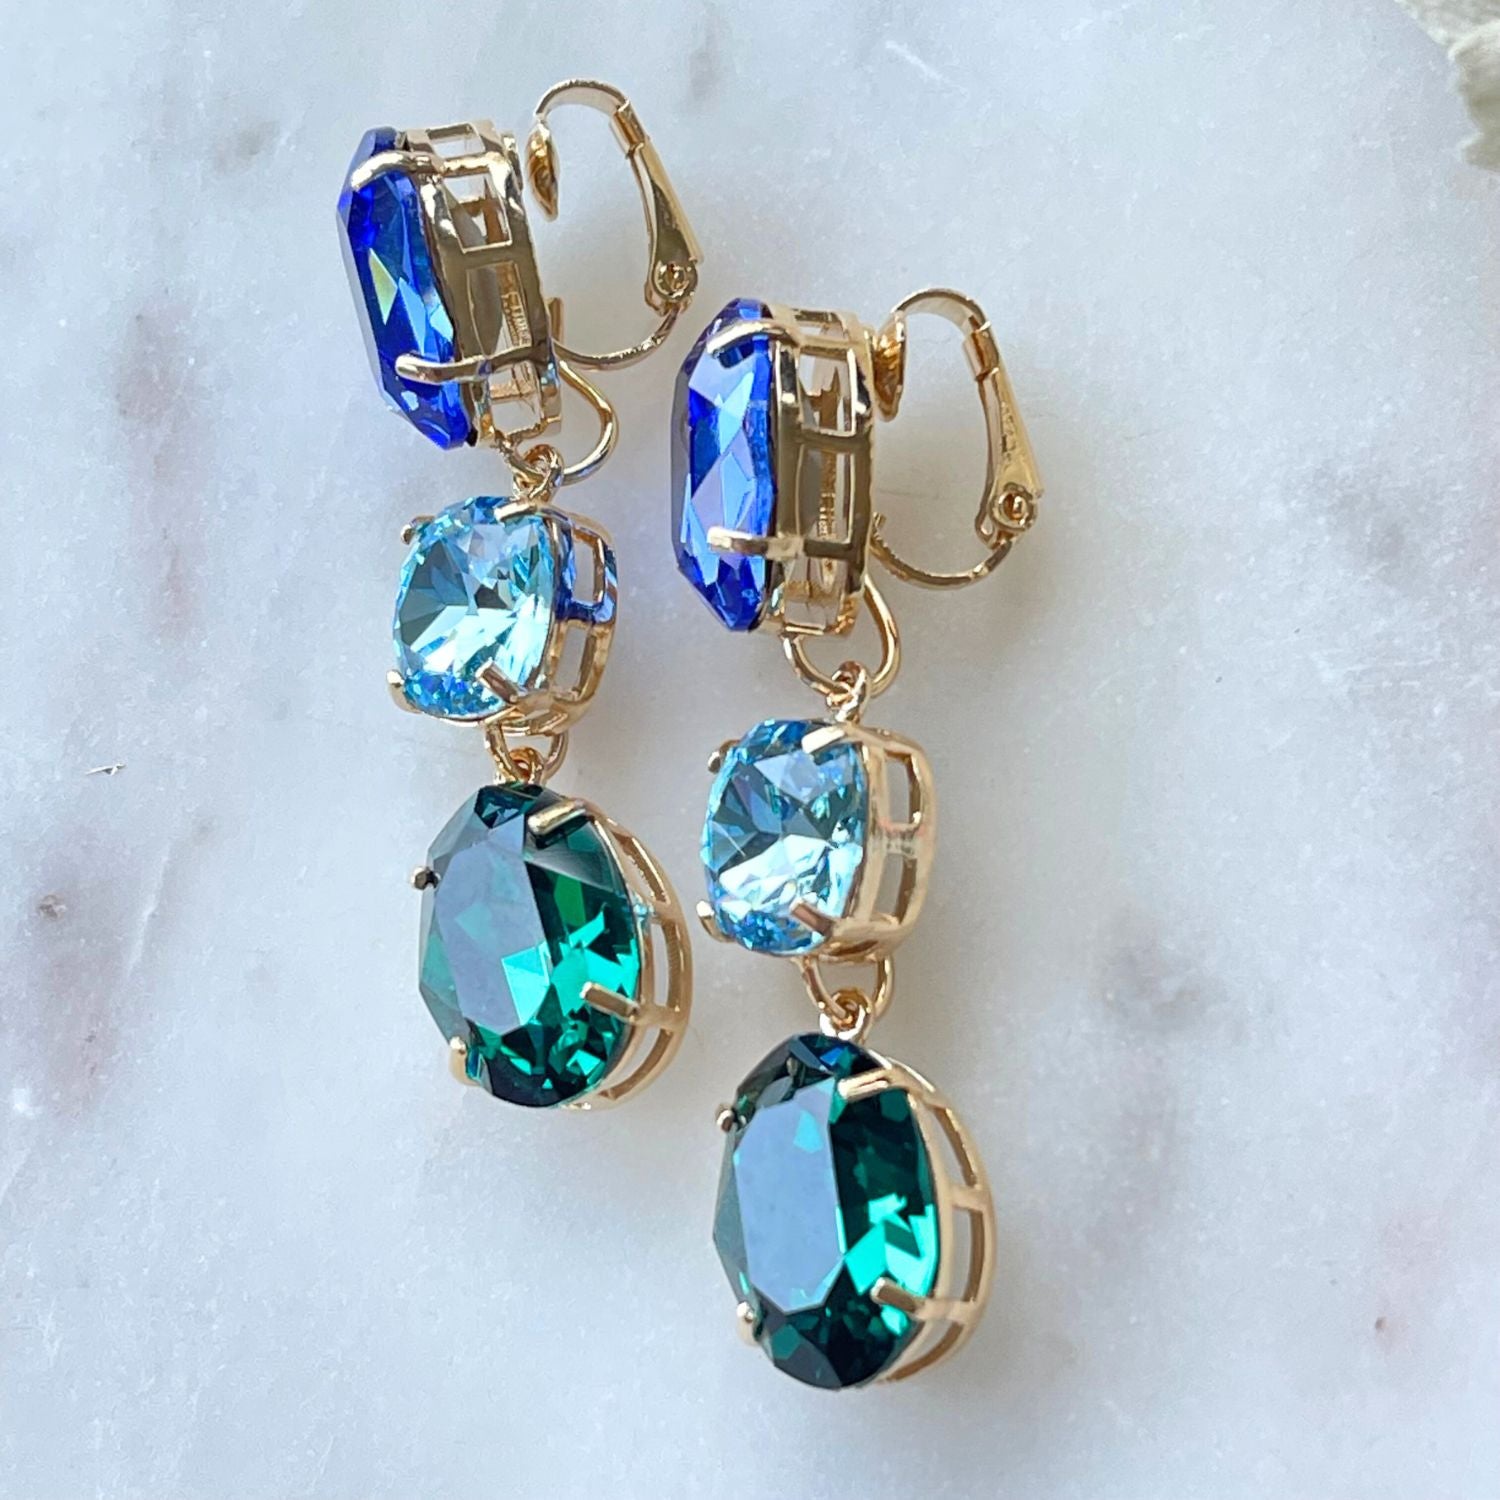 Erleben Sie die Eleganz der "GLOW"-Ohrringe mit blau-grünen Kristallen. Die grüne Basis kann separat getragen werden und verleiht einen dezenten, dennoch wunderschönen Touch. Die weltberühmten Kristalle sorgen für Glanz und zeitlose Eleganz